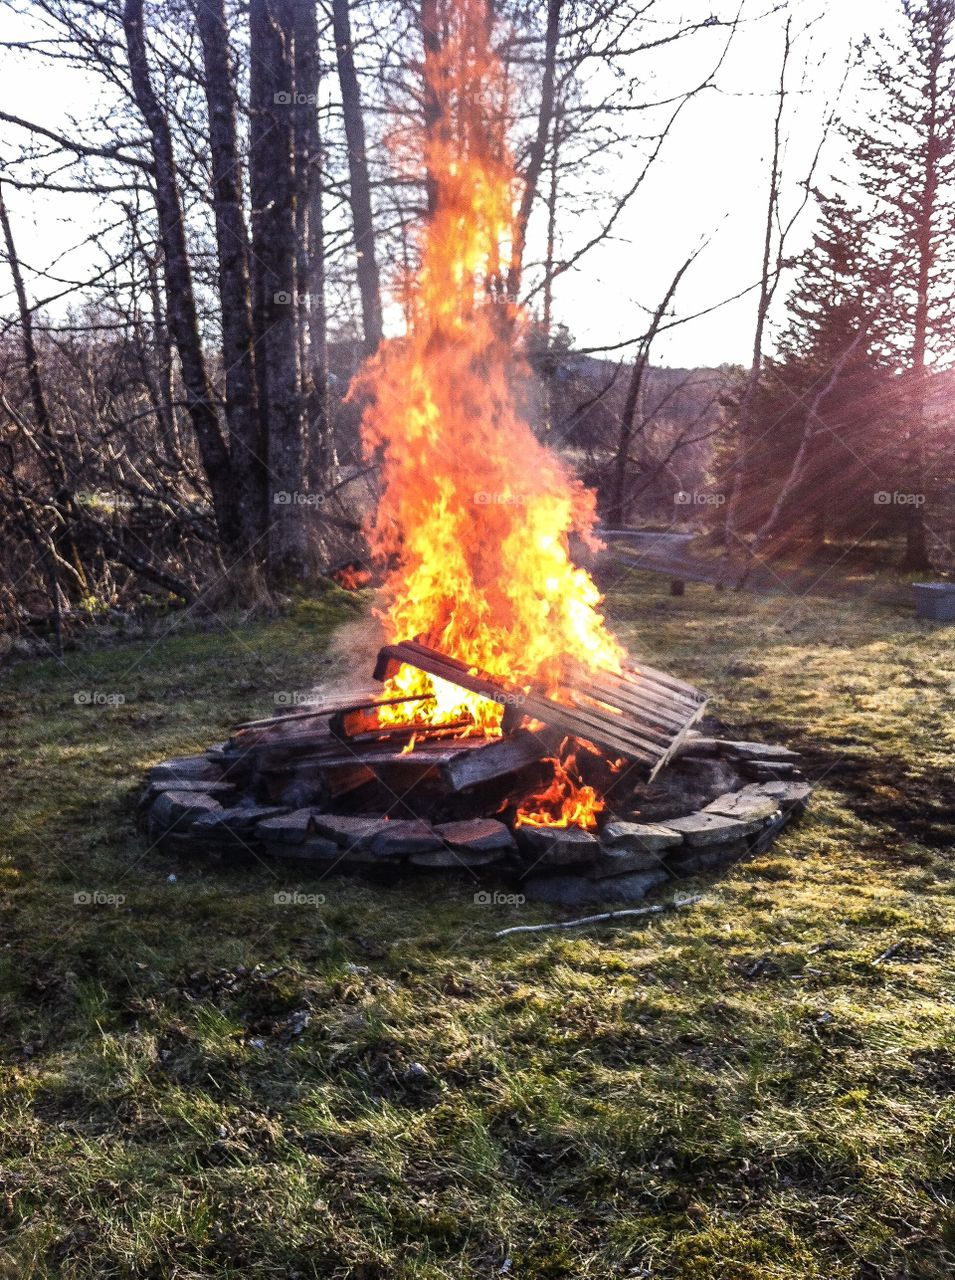 A little bonfire fun. A little bonfire fun